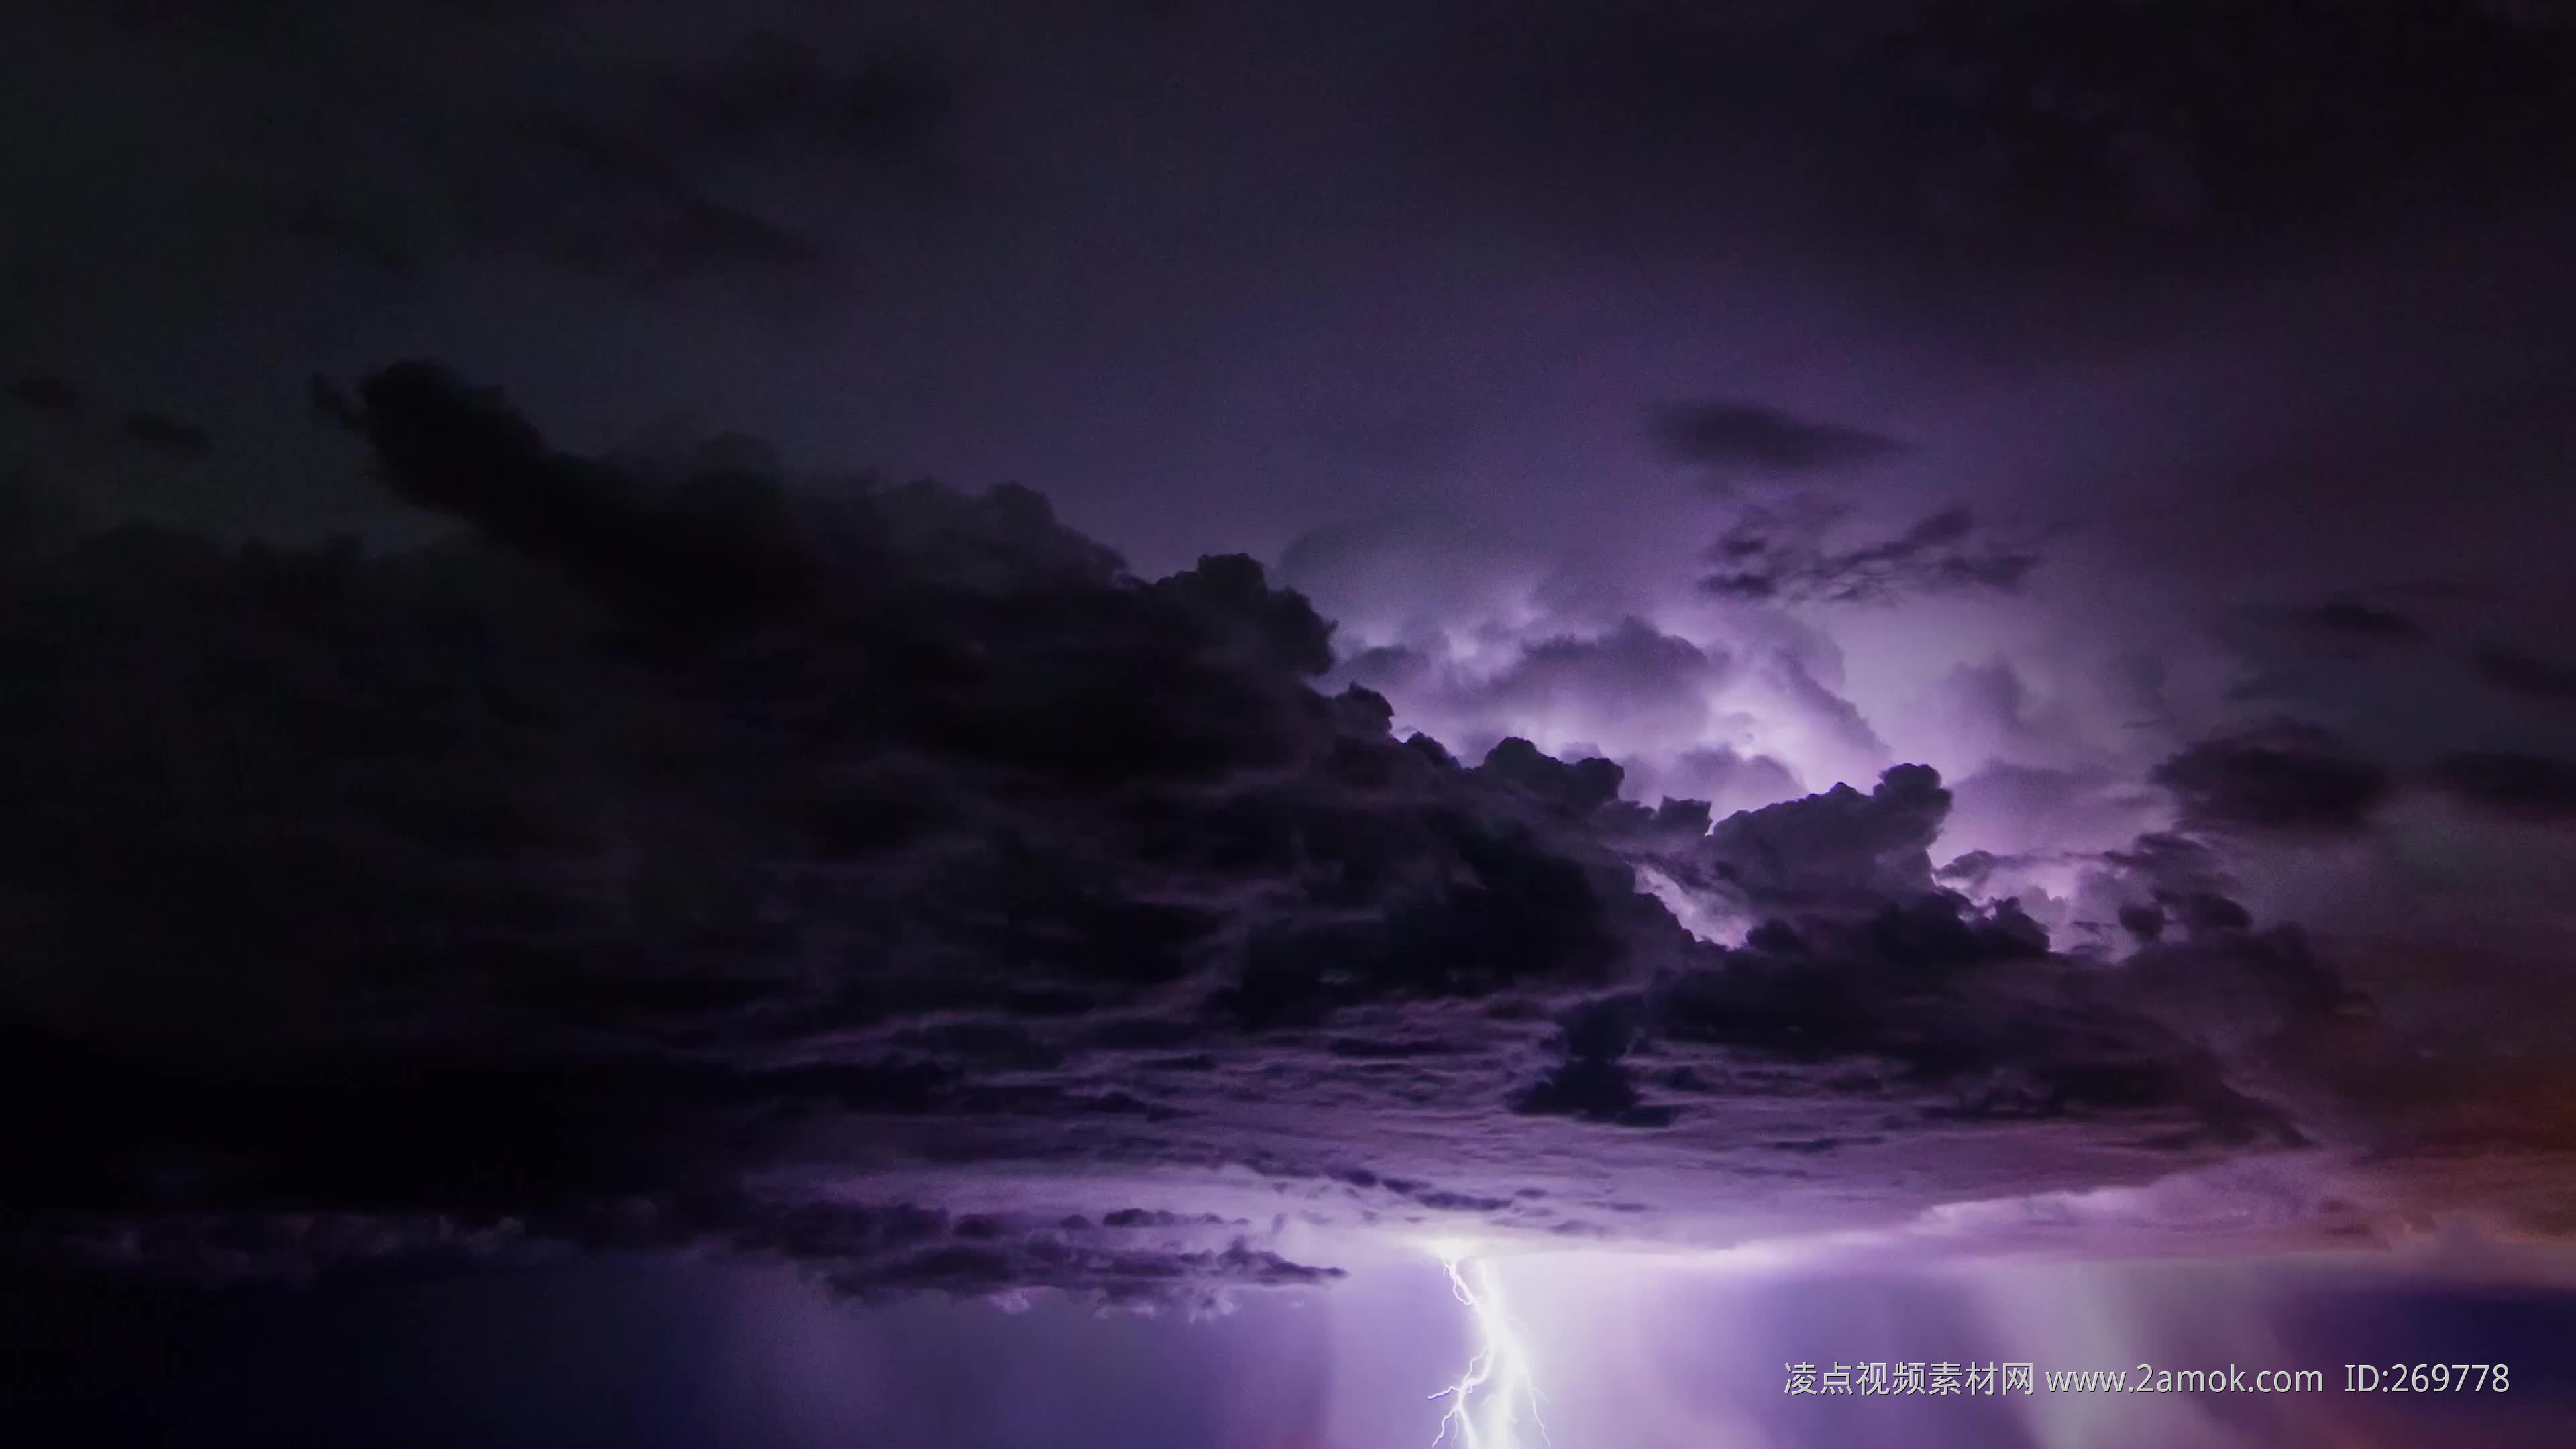 闪电、雷暴、雷声 - 免费可商用图片 - cc0.cn